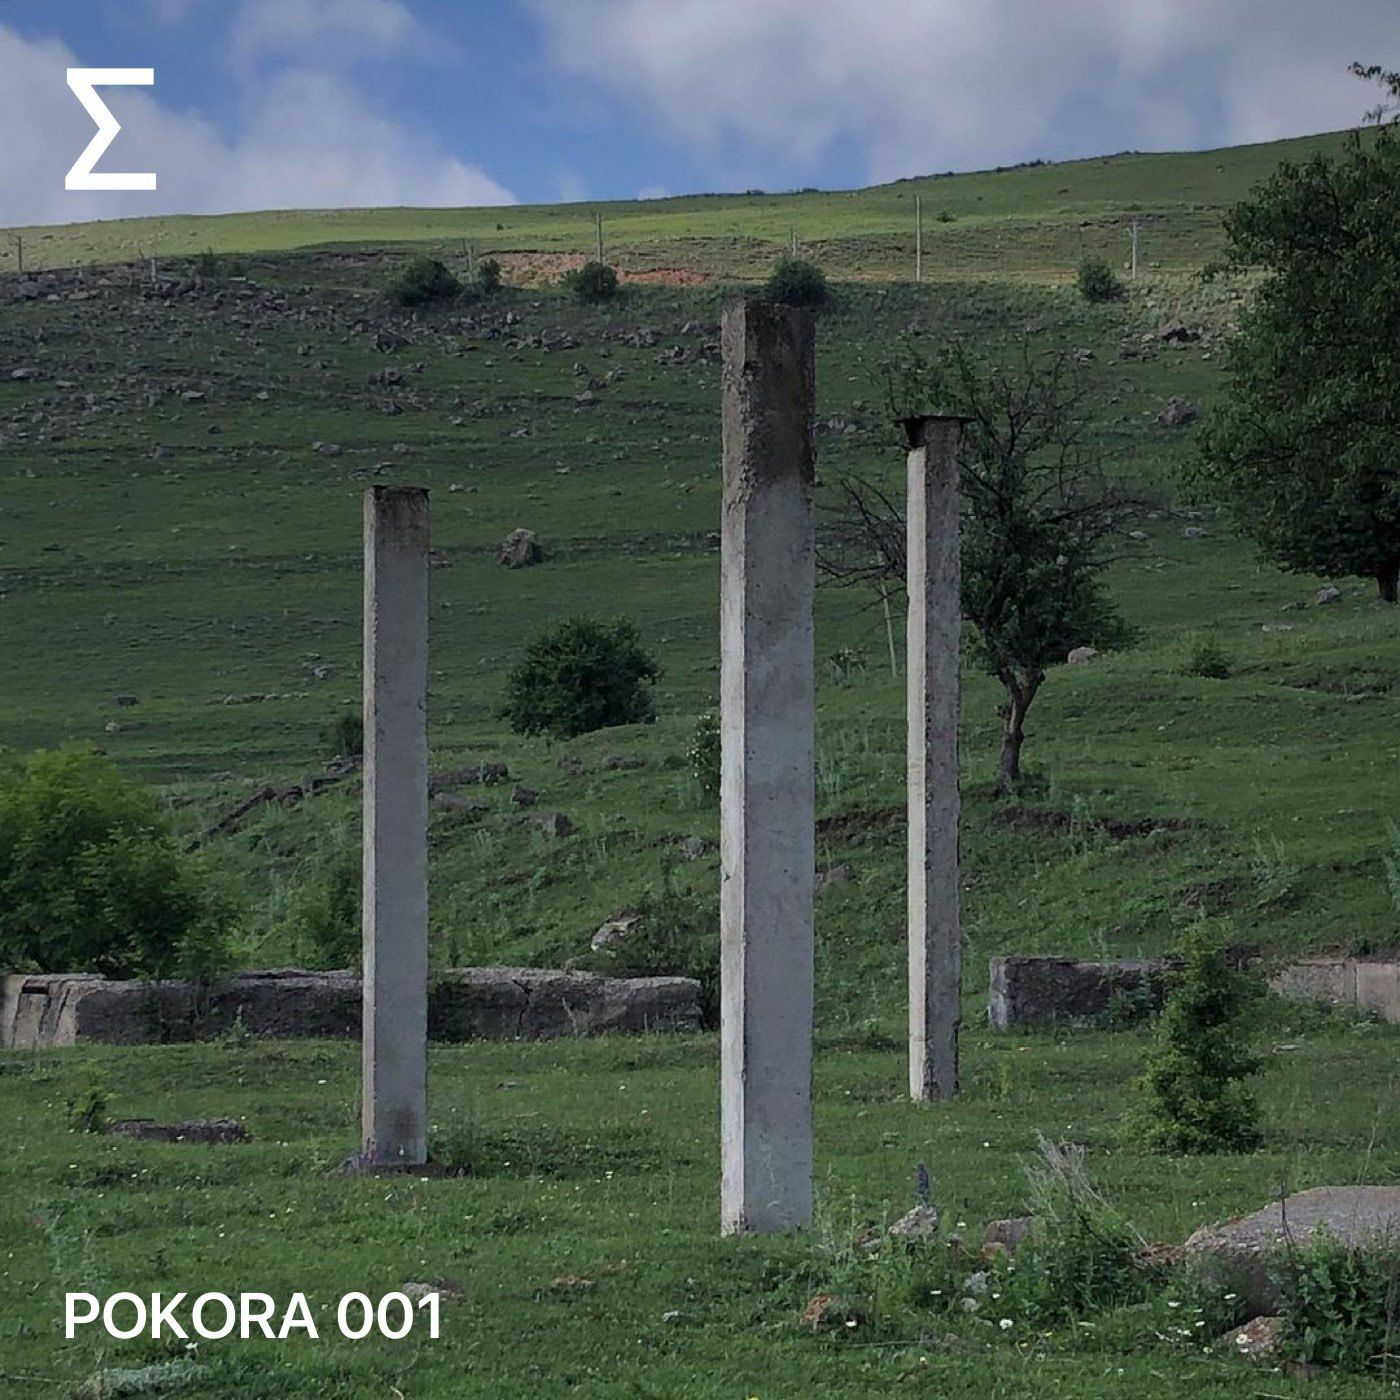 POKORA 001